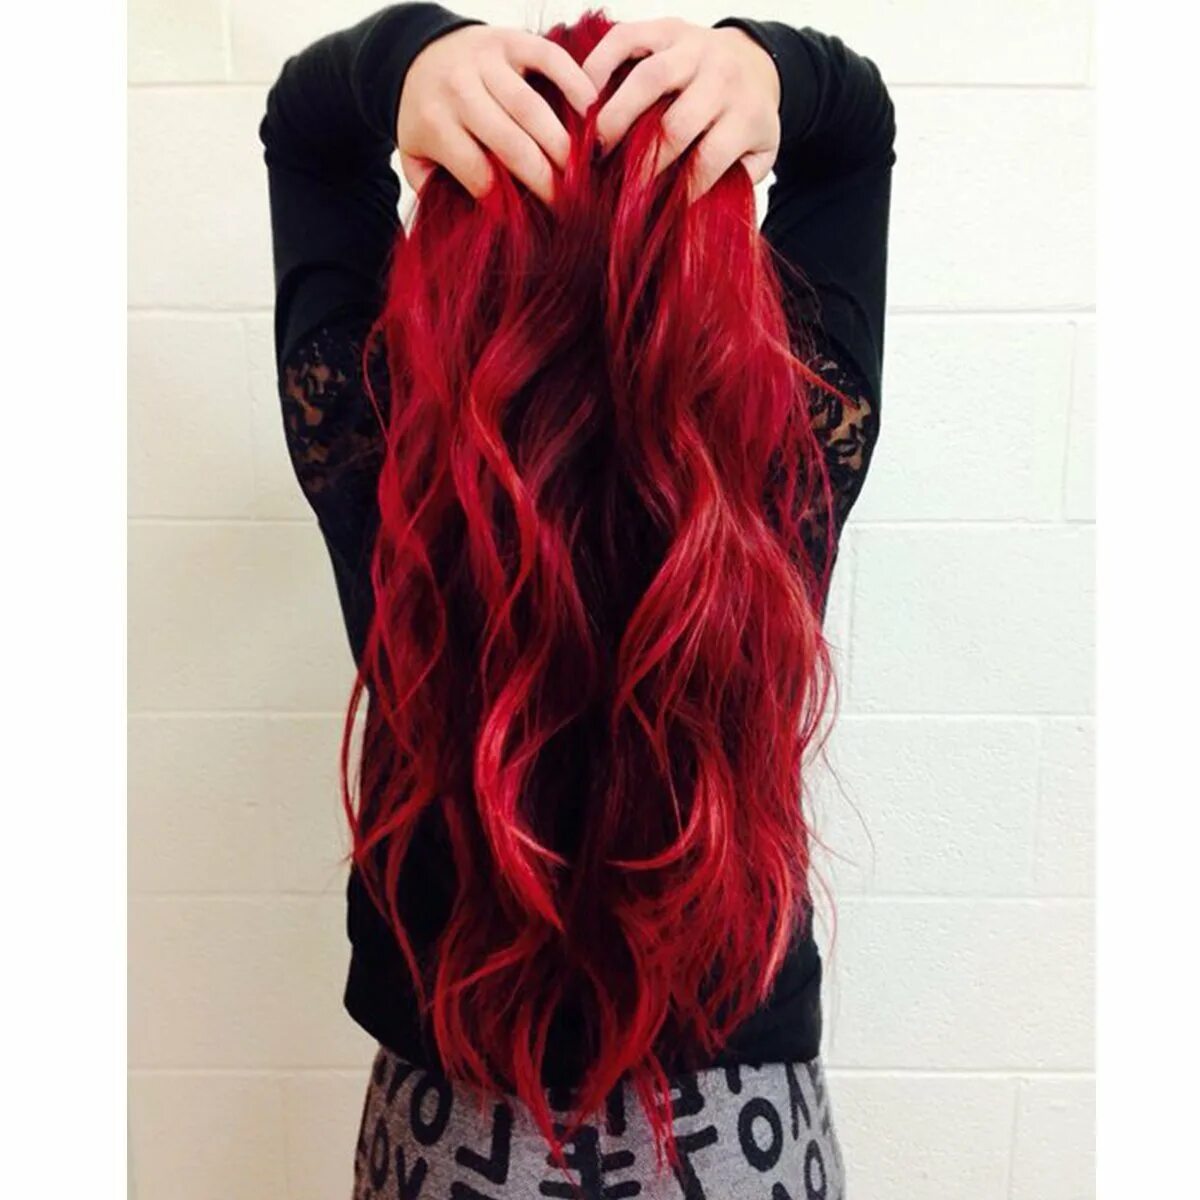 Черно красные волосы. Девушка с красными волосами. Красный цвет волос у девушек. Красные волосы со спины. Черно красные волосы длинные